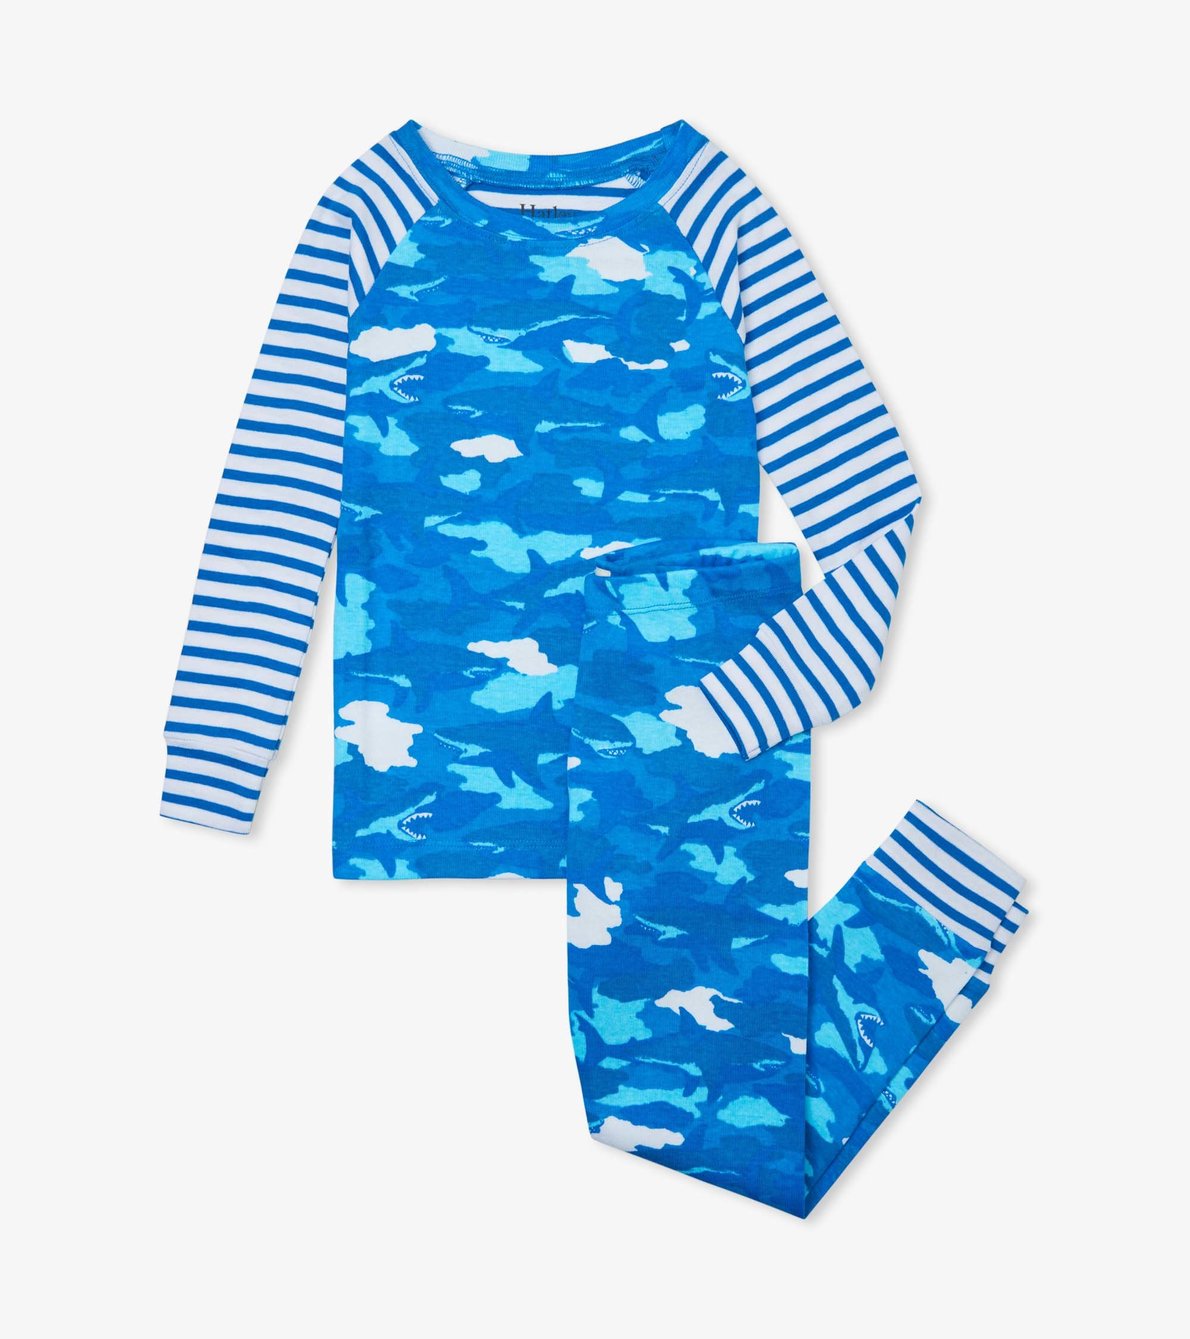 View larger image of Shark Camo Organic Cotton Raglan Pajama Set